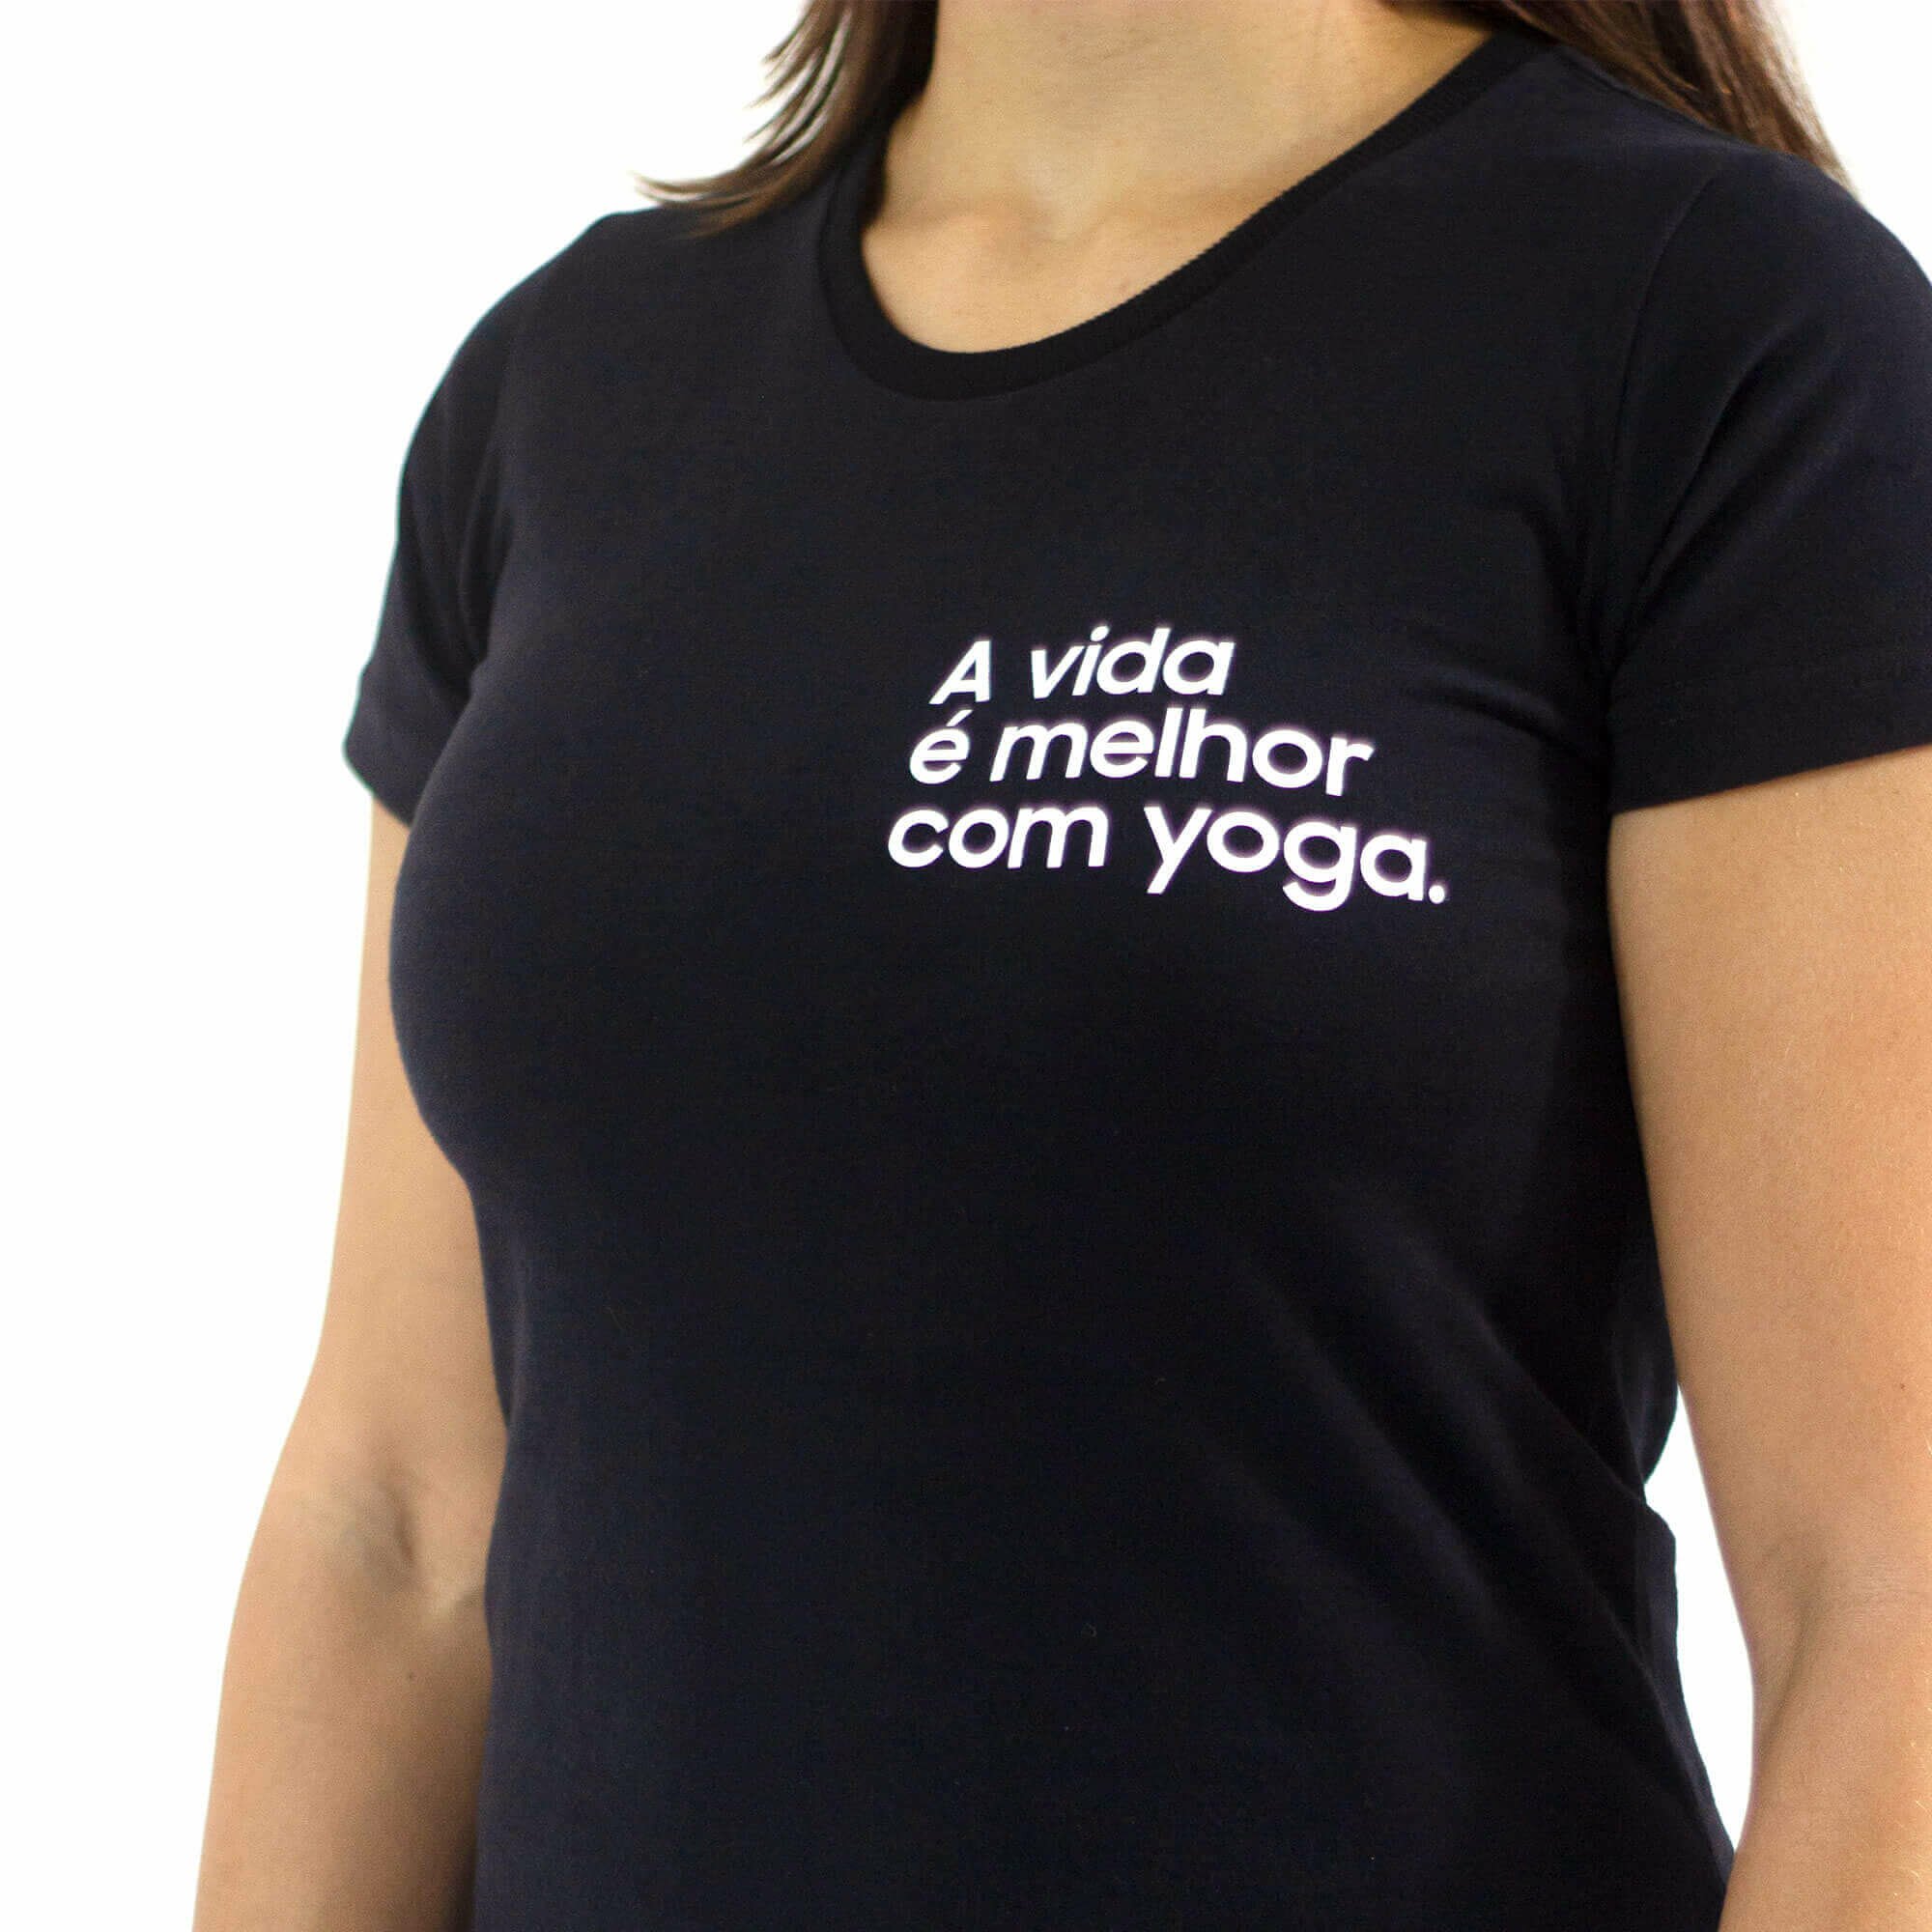 https://yogateria.com.br/wp-content/uploads/2021/05/camiseta-yogateria-avidaemelhorcomyoga-5.jpg